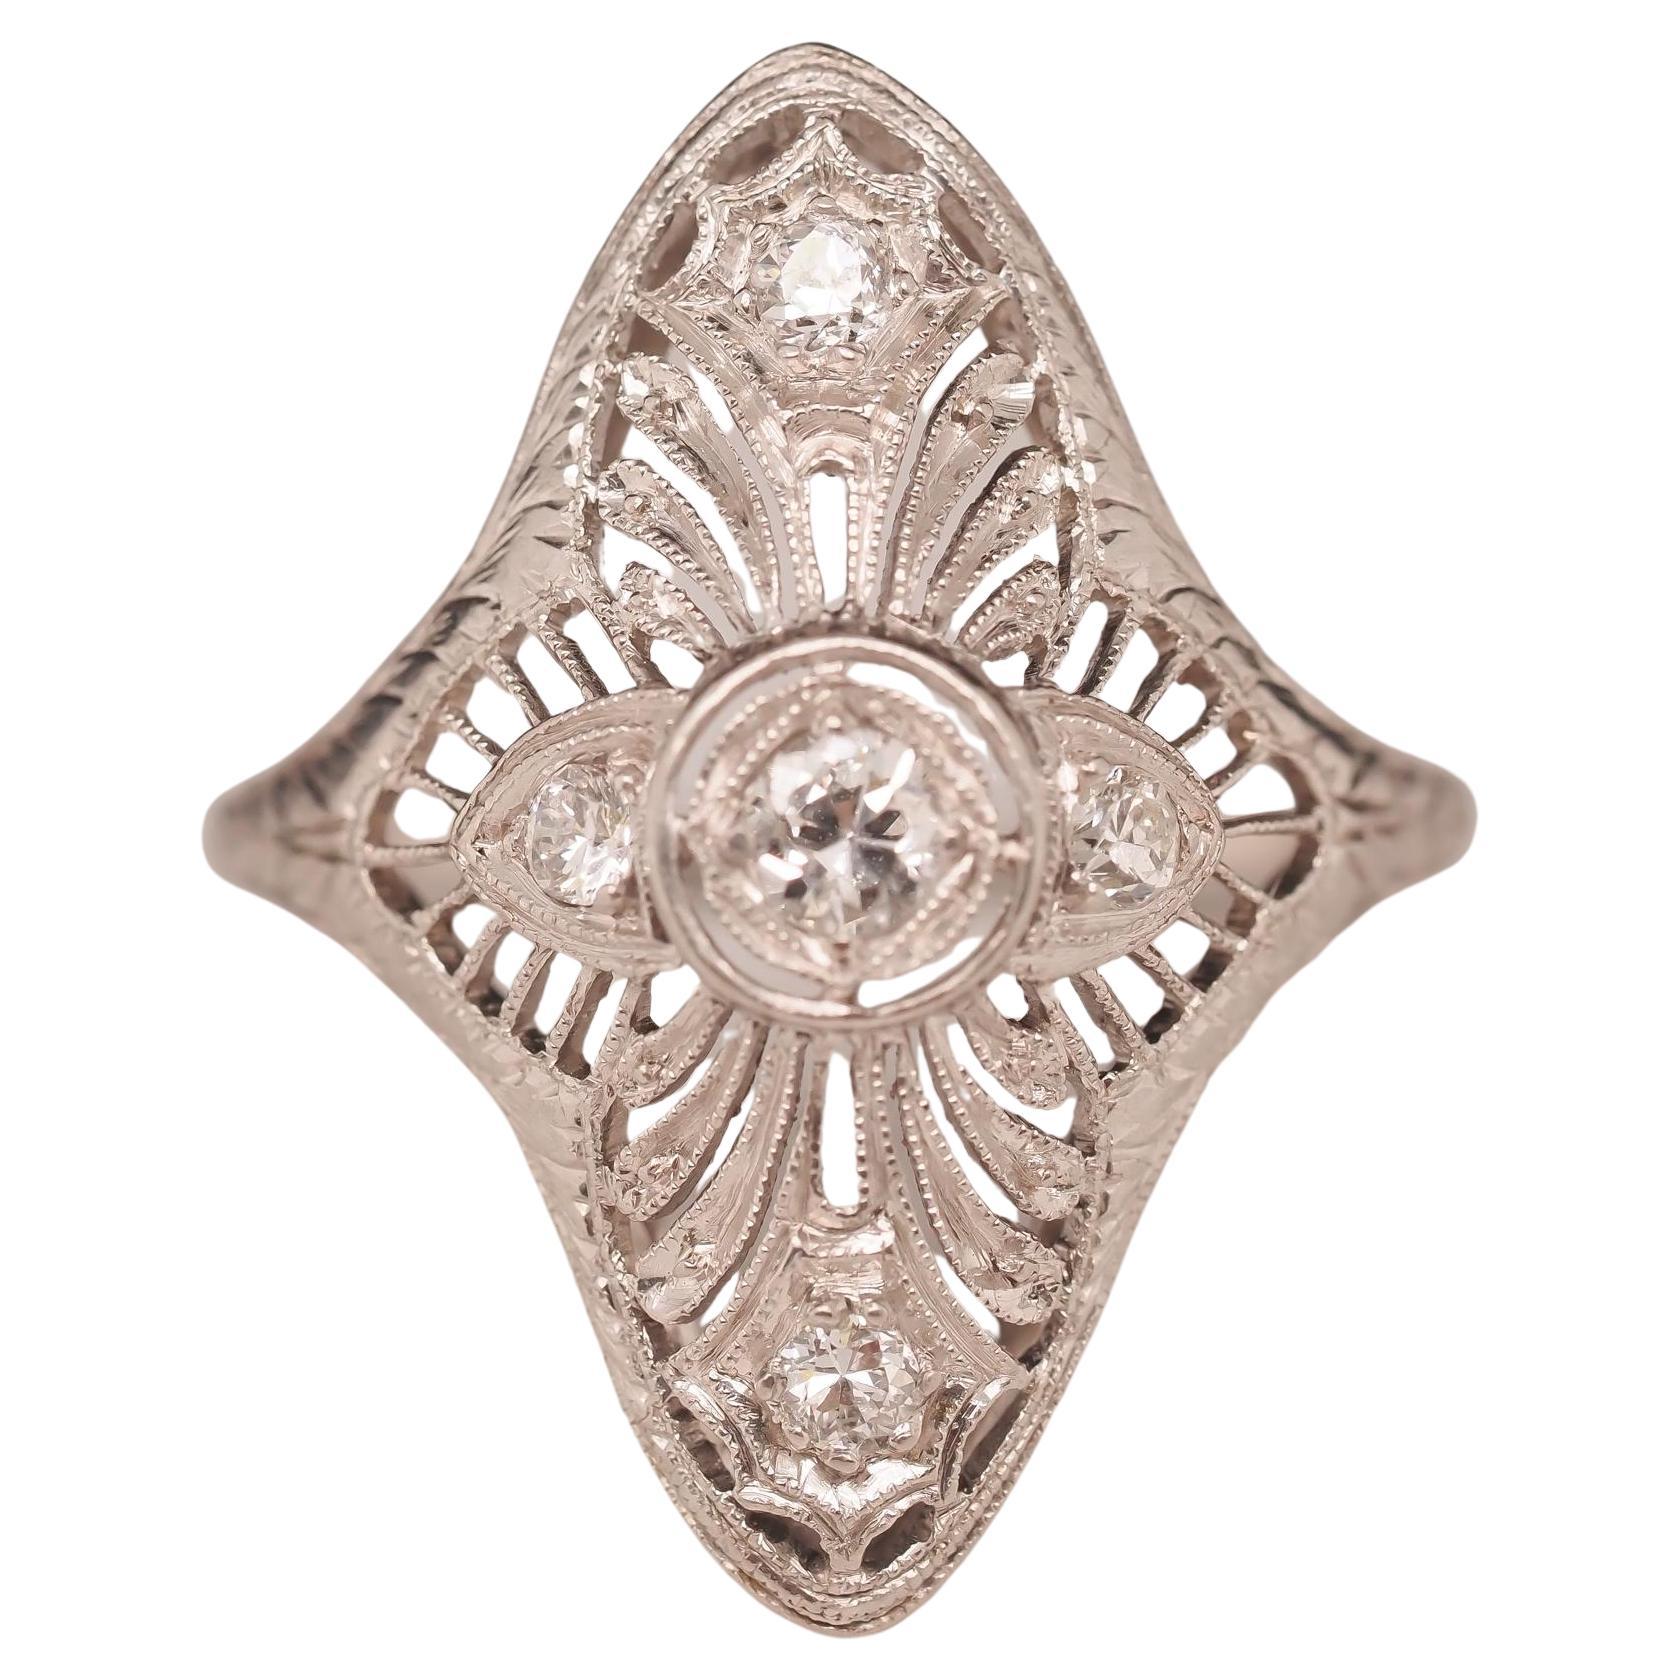 Circa 1920s Platino Art Deco Filigrana Antiguo Anillo Europeo Escudo de Diamantes